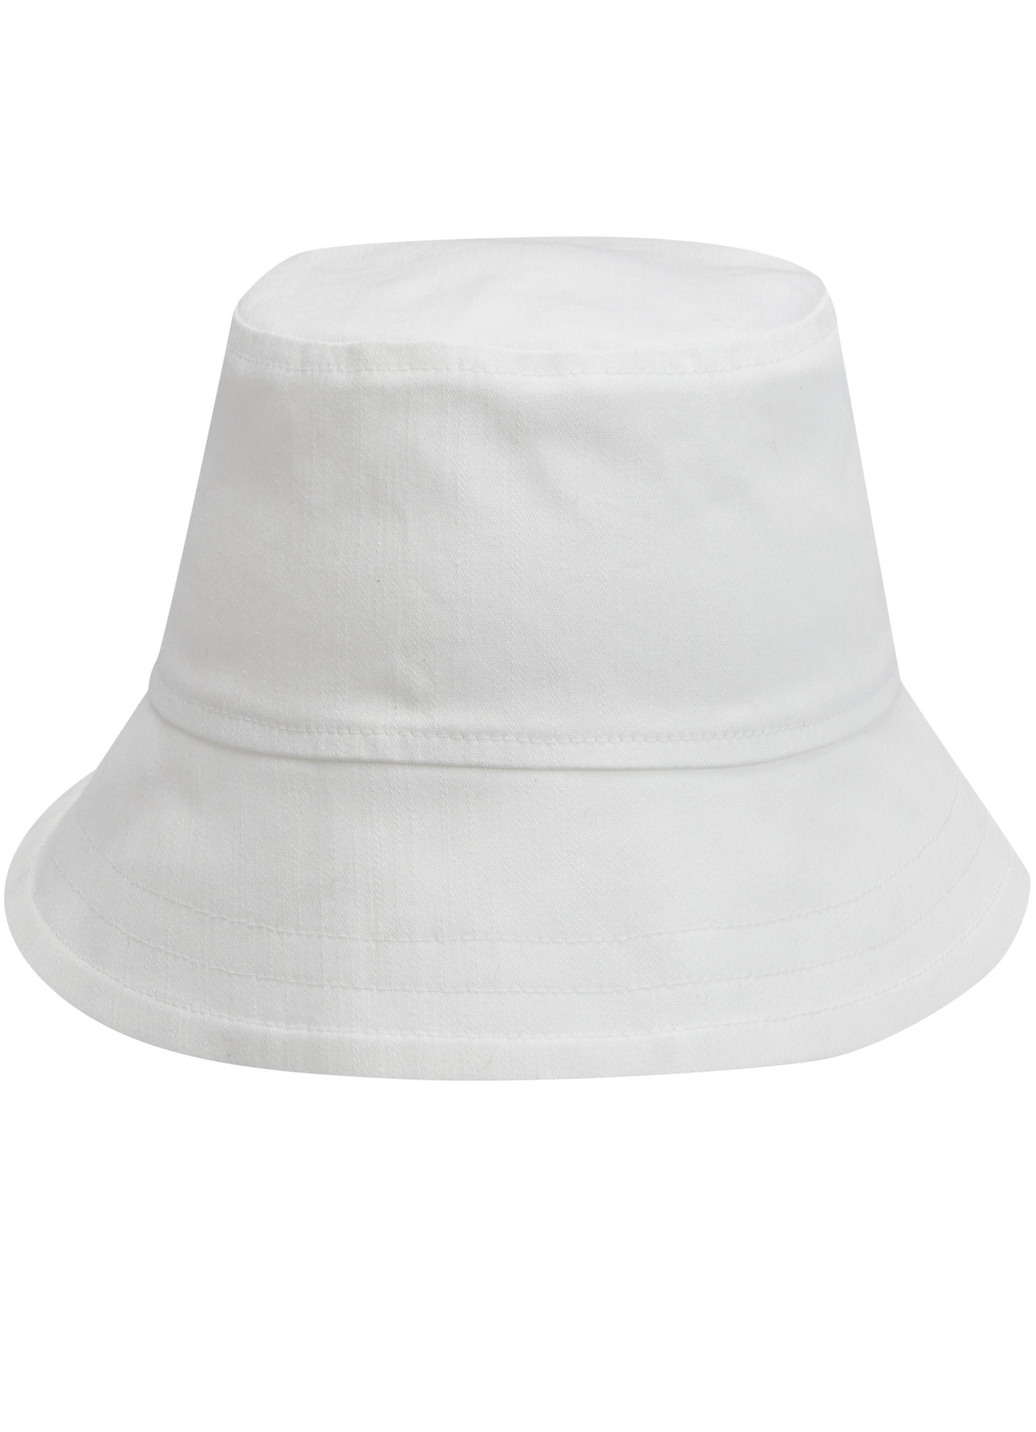 Fischer-Hut aus elastischem Textilmaterial, Weiss von KLAUS MODELLE